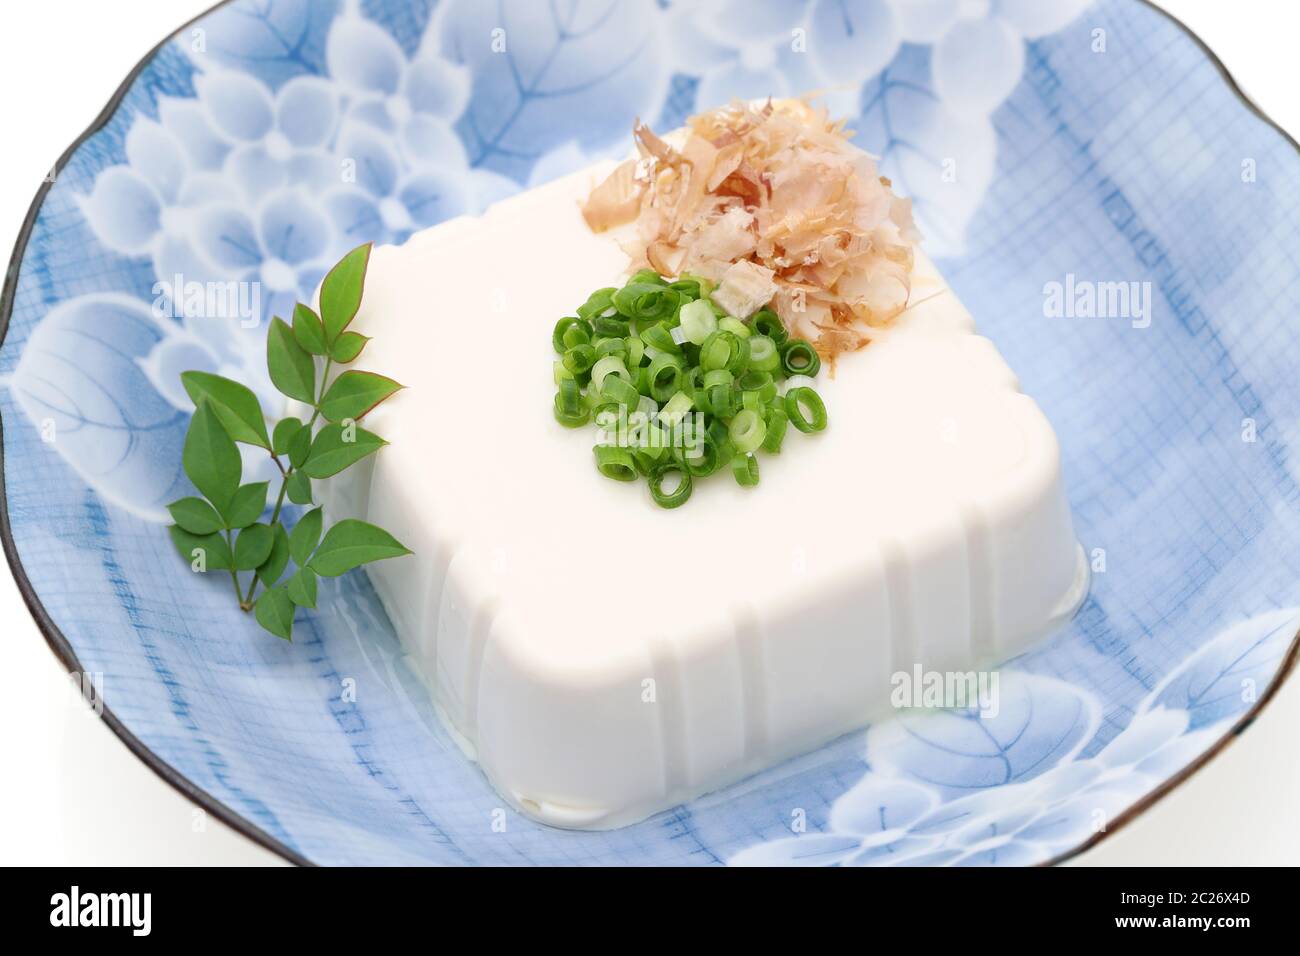 Cuisine japonaise, tofu japonais doux et froid dans un bol sur fond blanc Banque D'Images